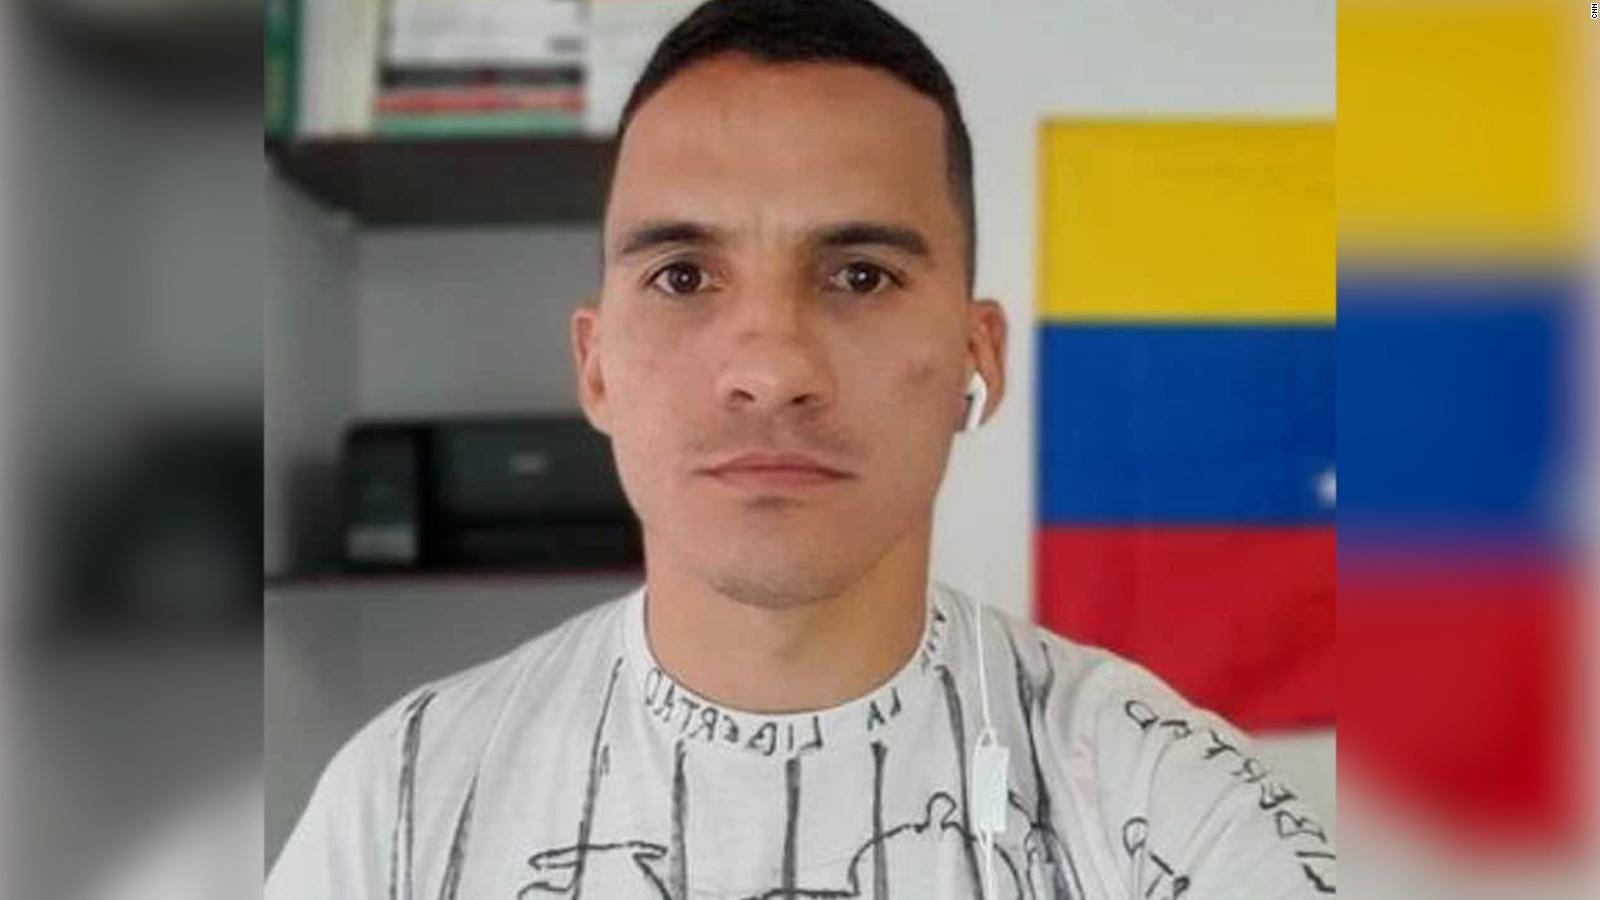 Funcionarios de Chile buscan colaboración de Venezuela por el caso
Ronald Ojeda